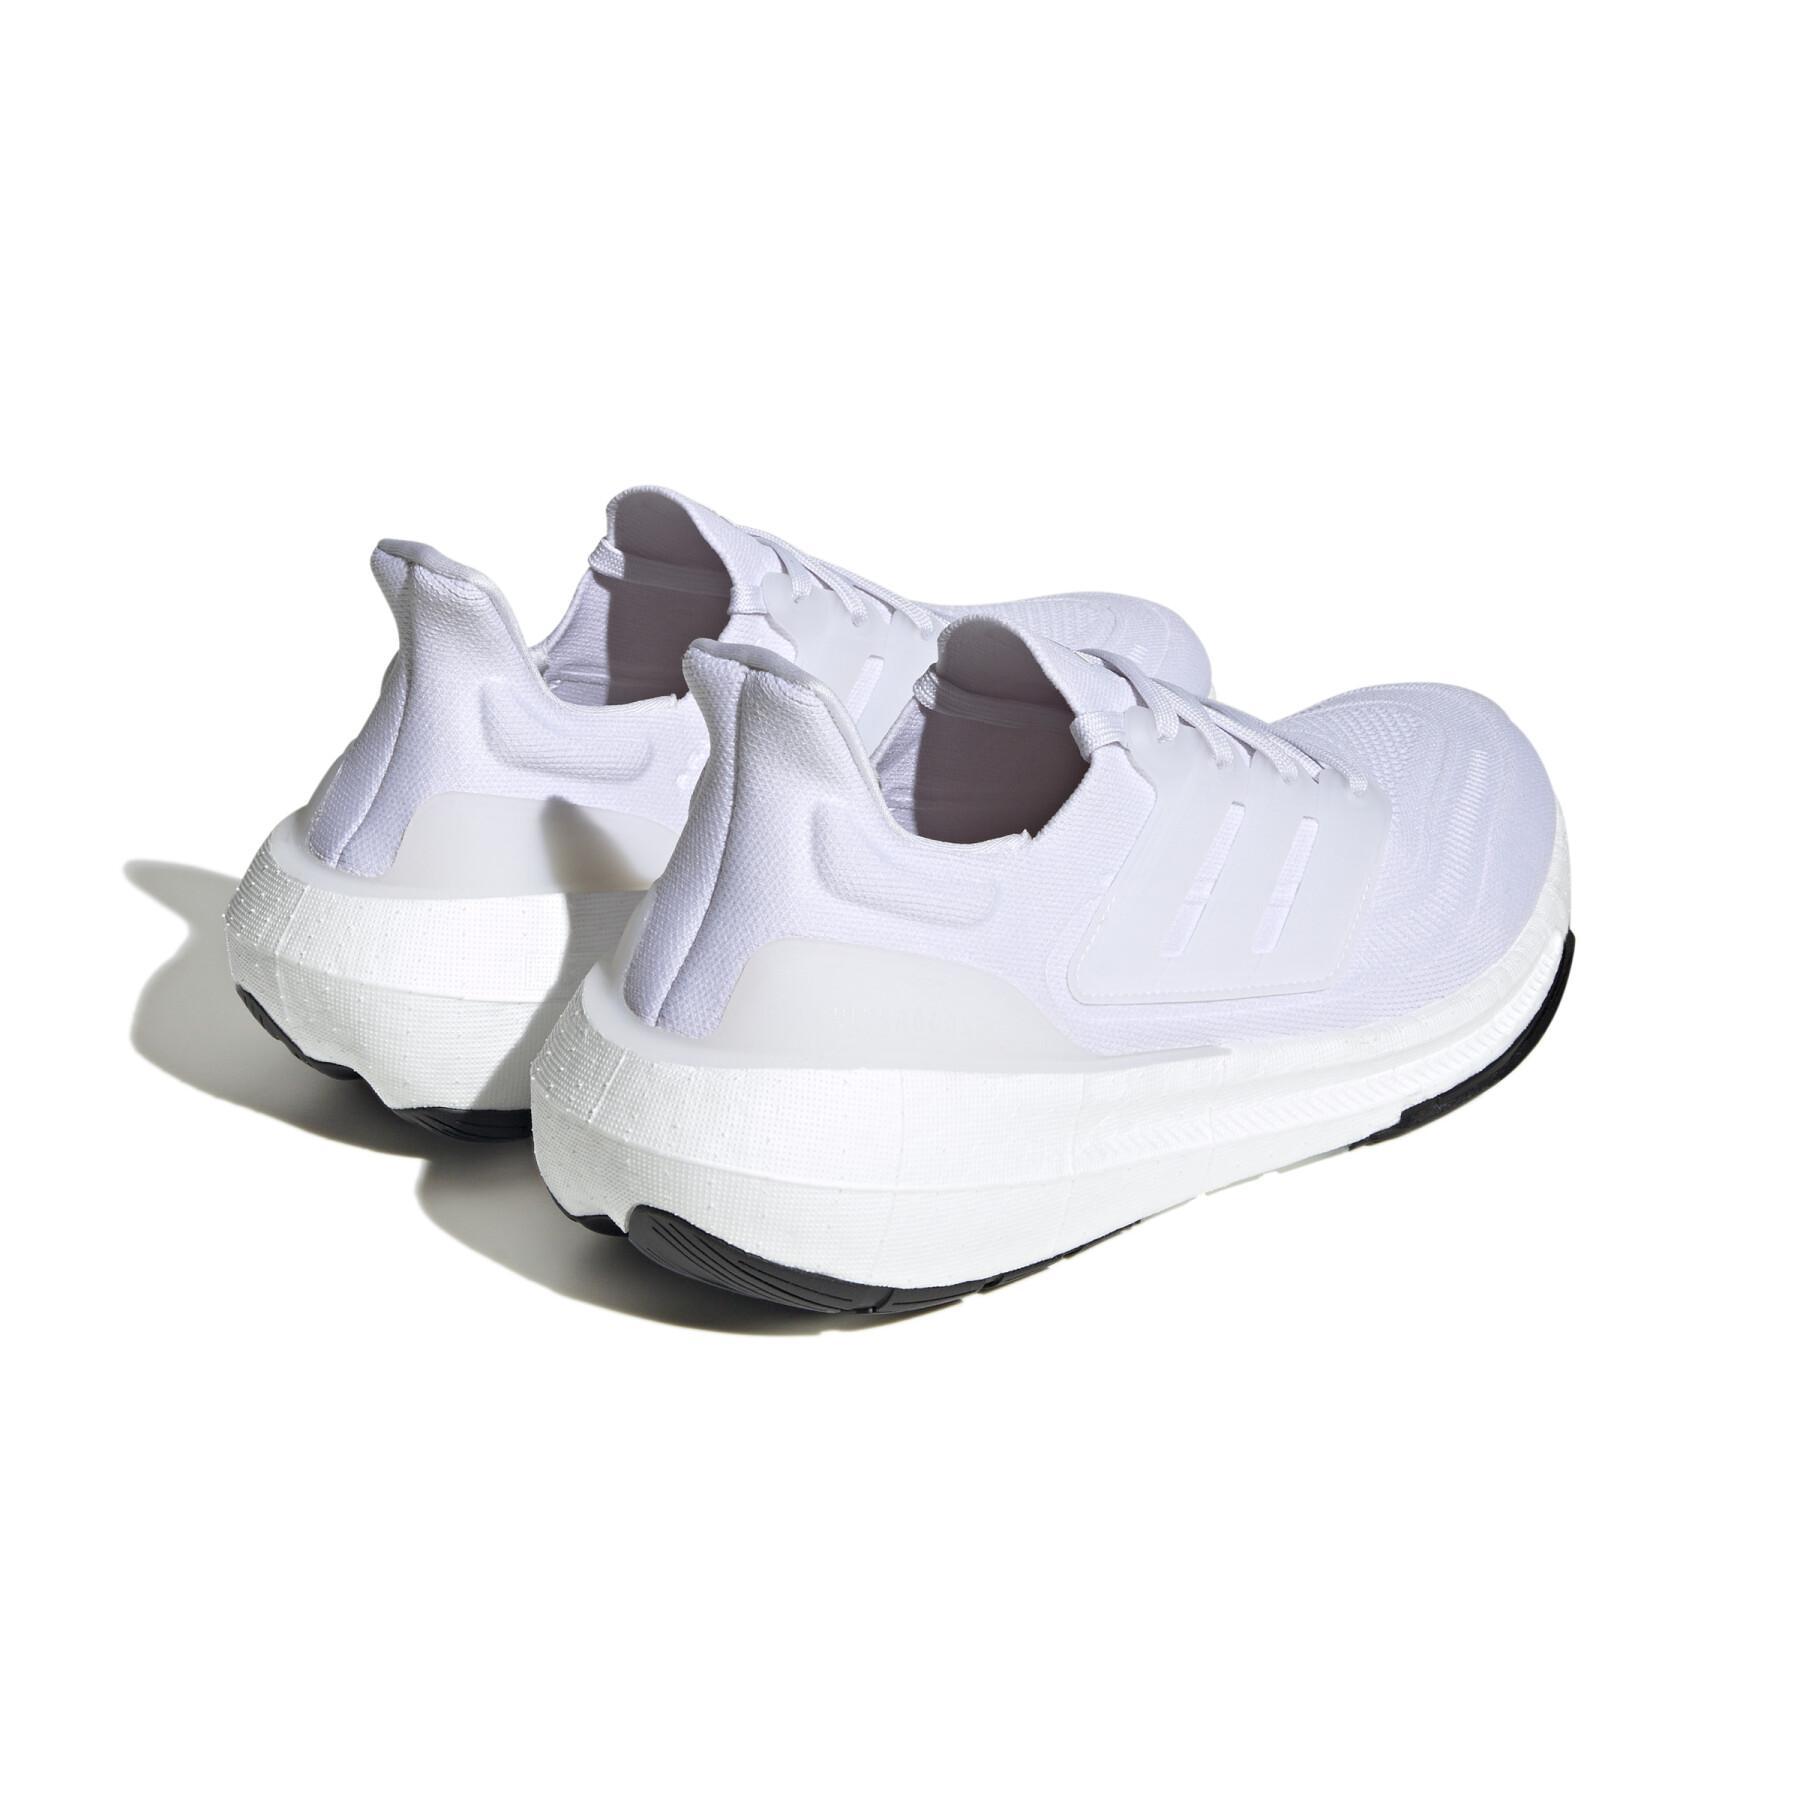 Schoenen van Running adidas Ultraboost Light